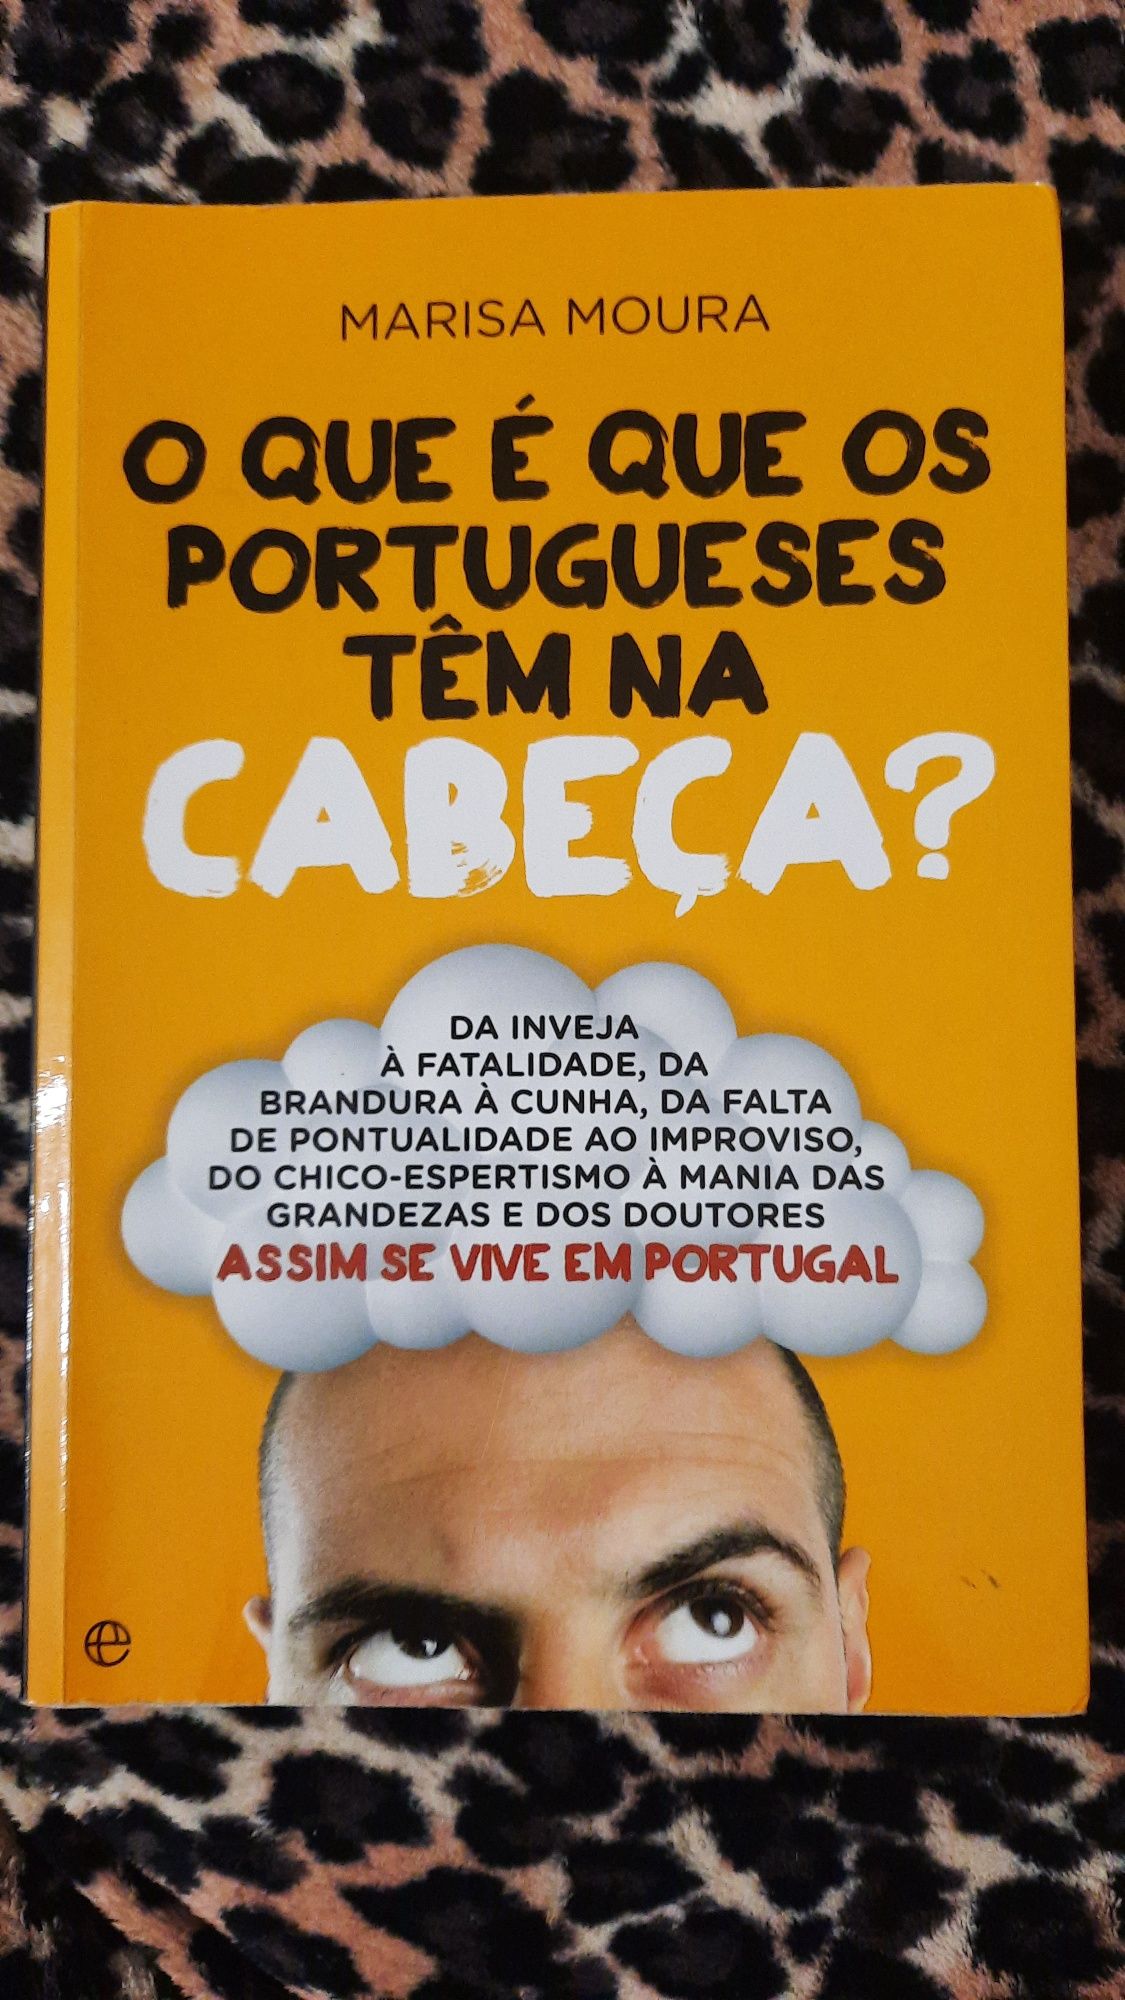 Livro "O que é que os portugueses têm na cabeça?"